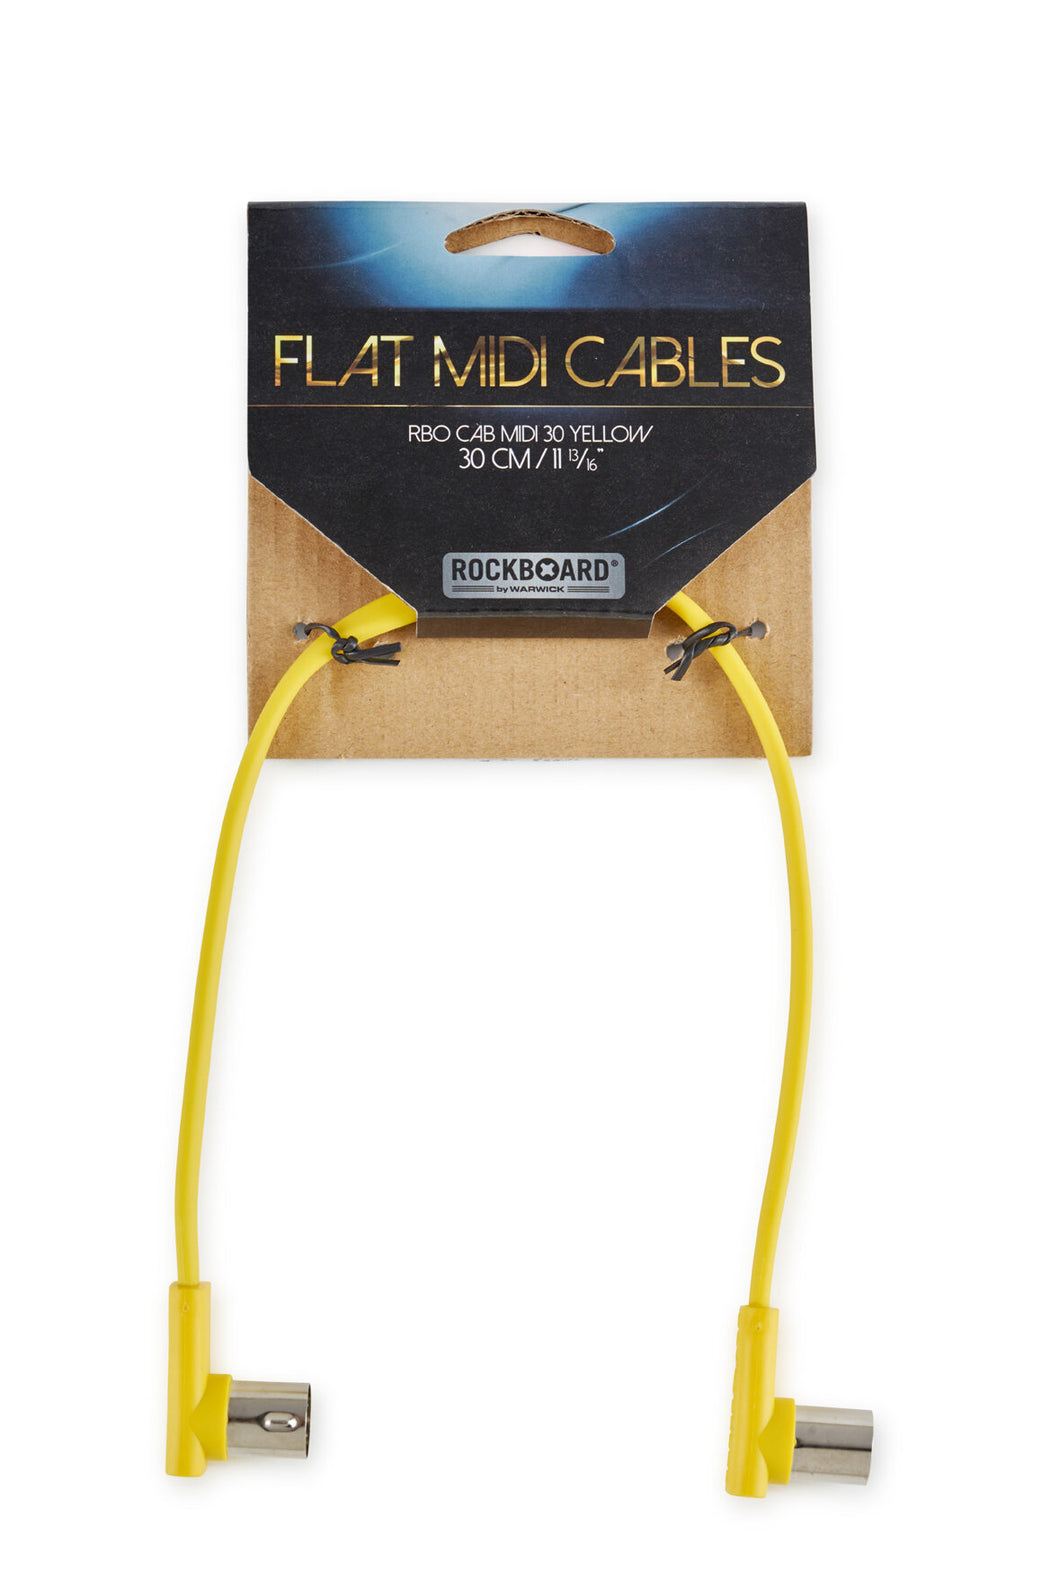 RockBoard Flat MIDI Cable - Yellow, 30 cm / 11 13/16